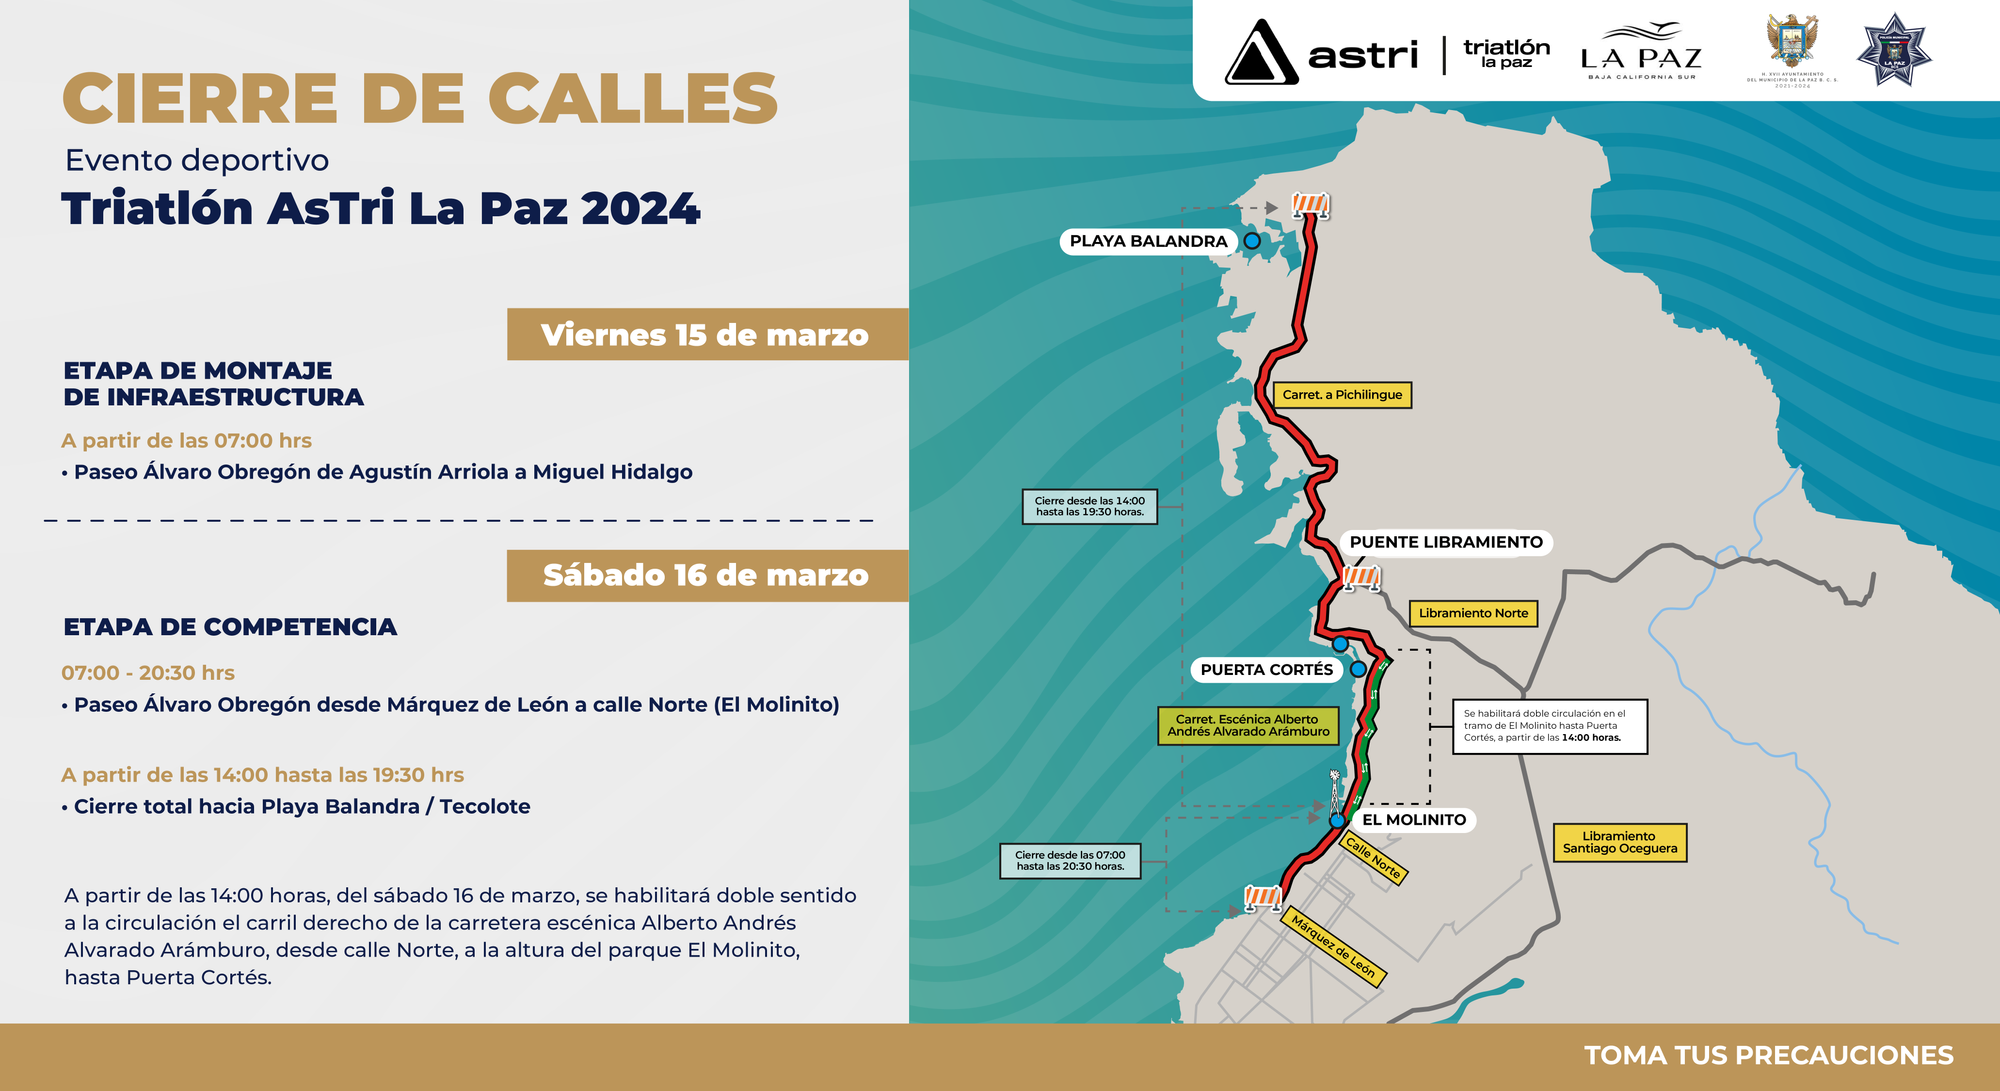 A partir del viernes 15 de marzo se implementarán diversos cierres a la circulación en el paseo Álvaro Obregón